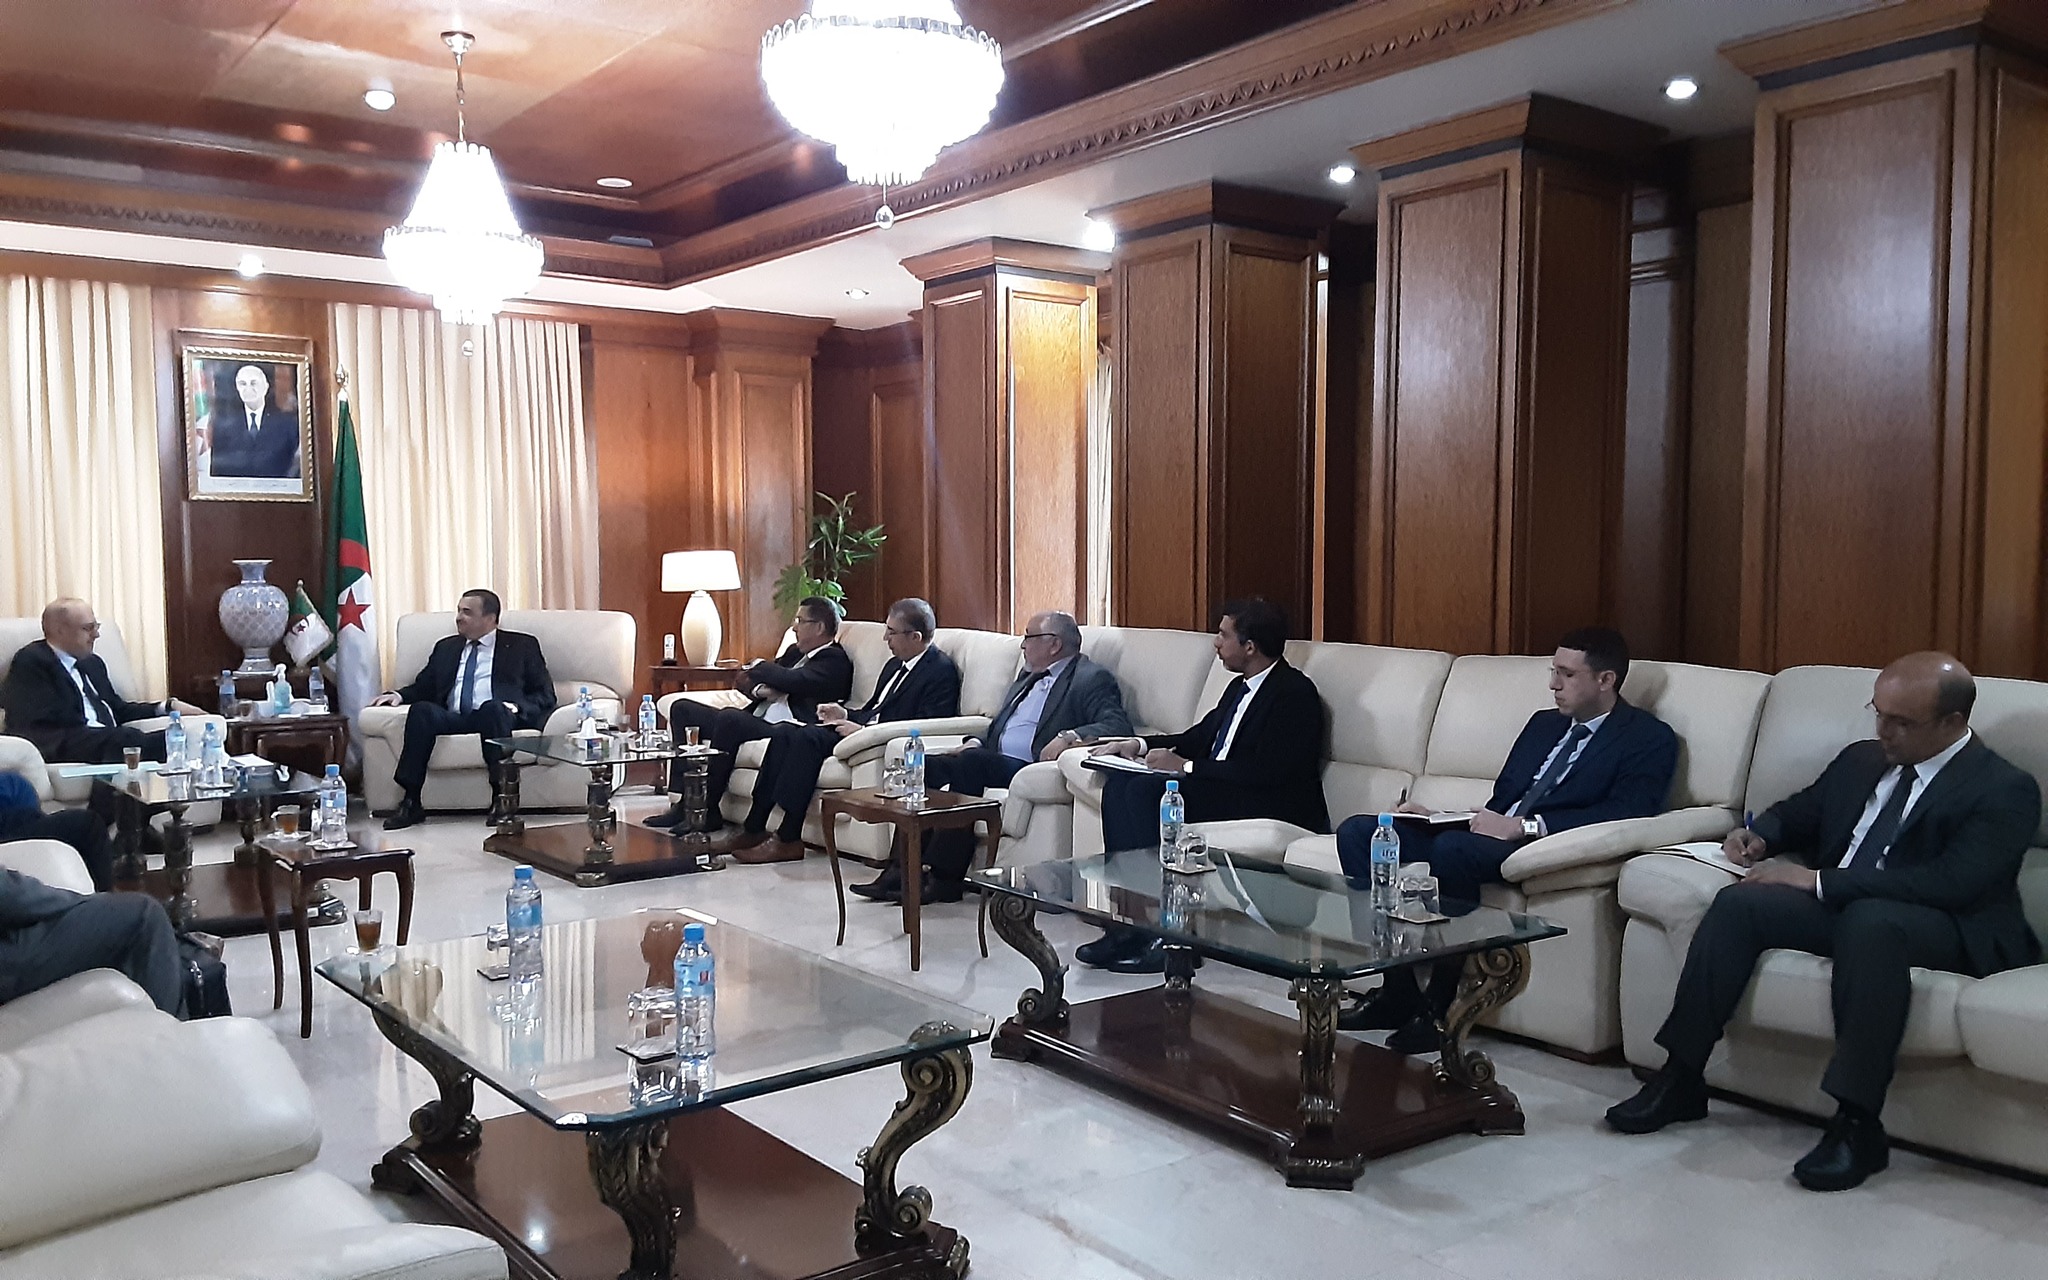 وزير الطاقة والمناجم الجزائري يبحث فرص الاستثمار في قطاع الطاقة الجزائري مع مسؤولي شركة دلتا السعودية